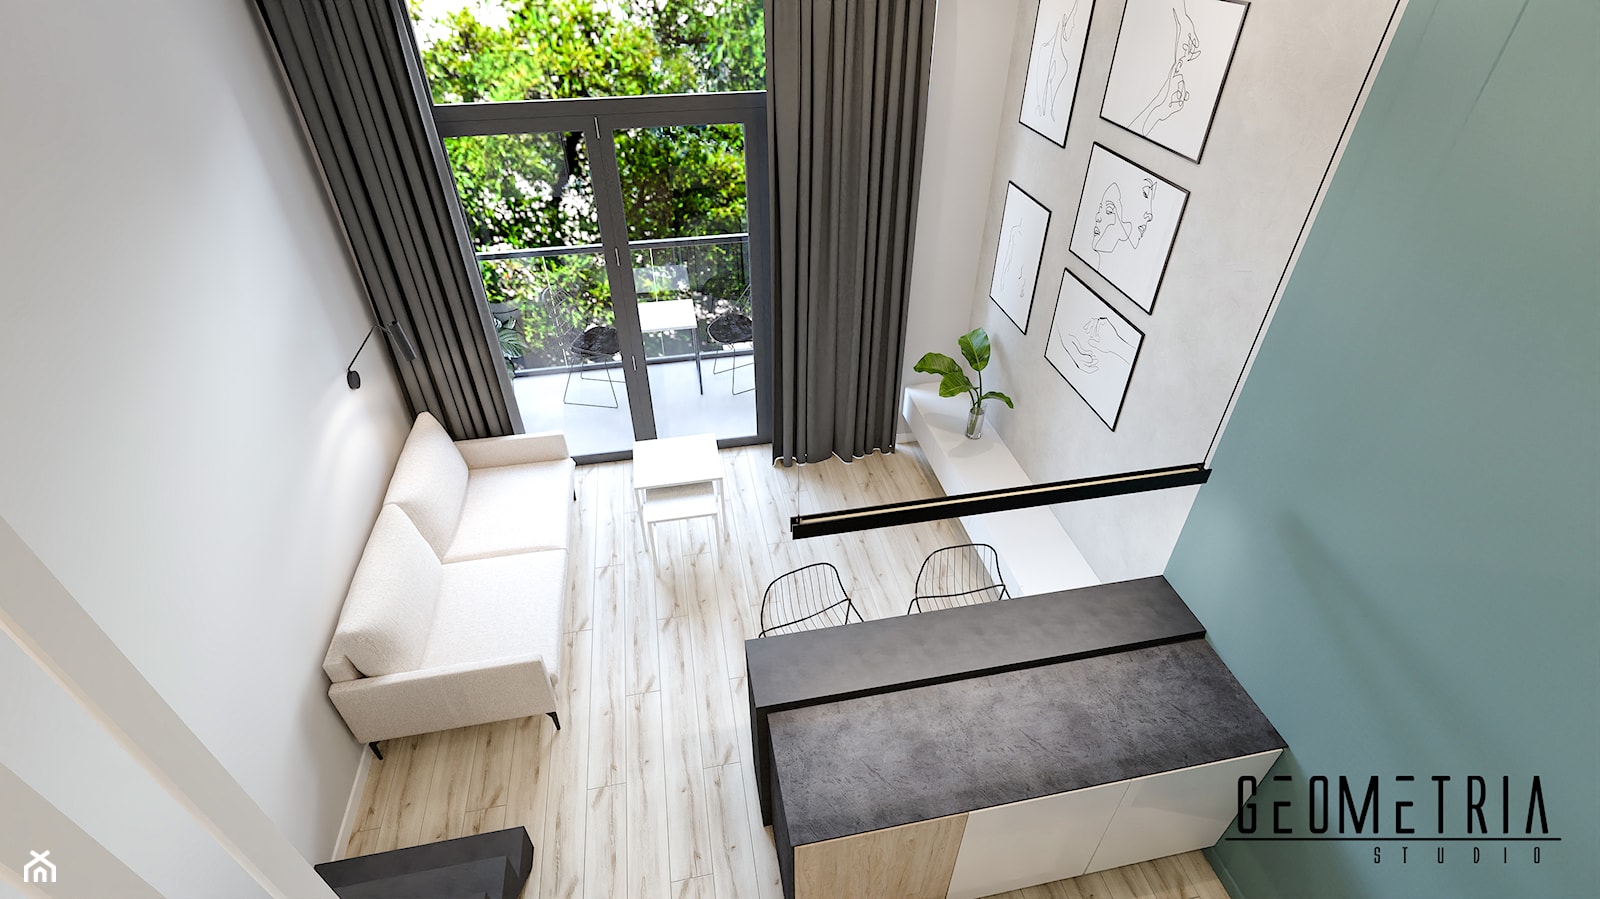 Apartament MINImum powierzchni, MAXImum funkcjonalności - Salon - zdjęcie od Geometria Studio - Homebook